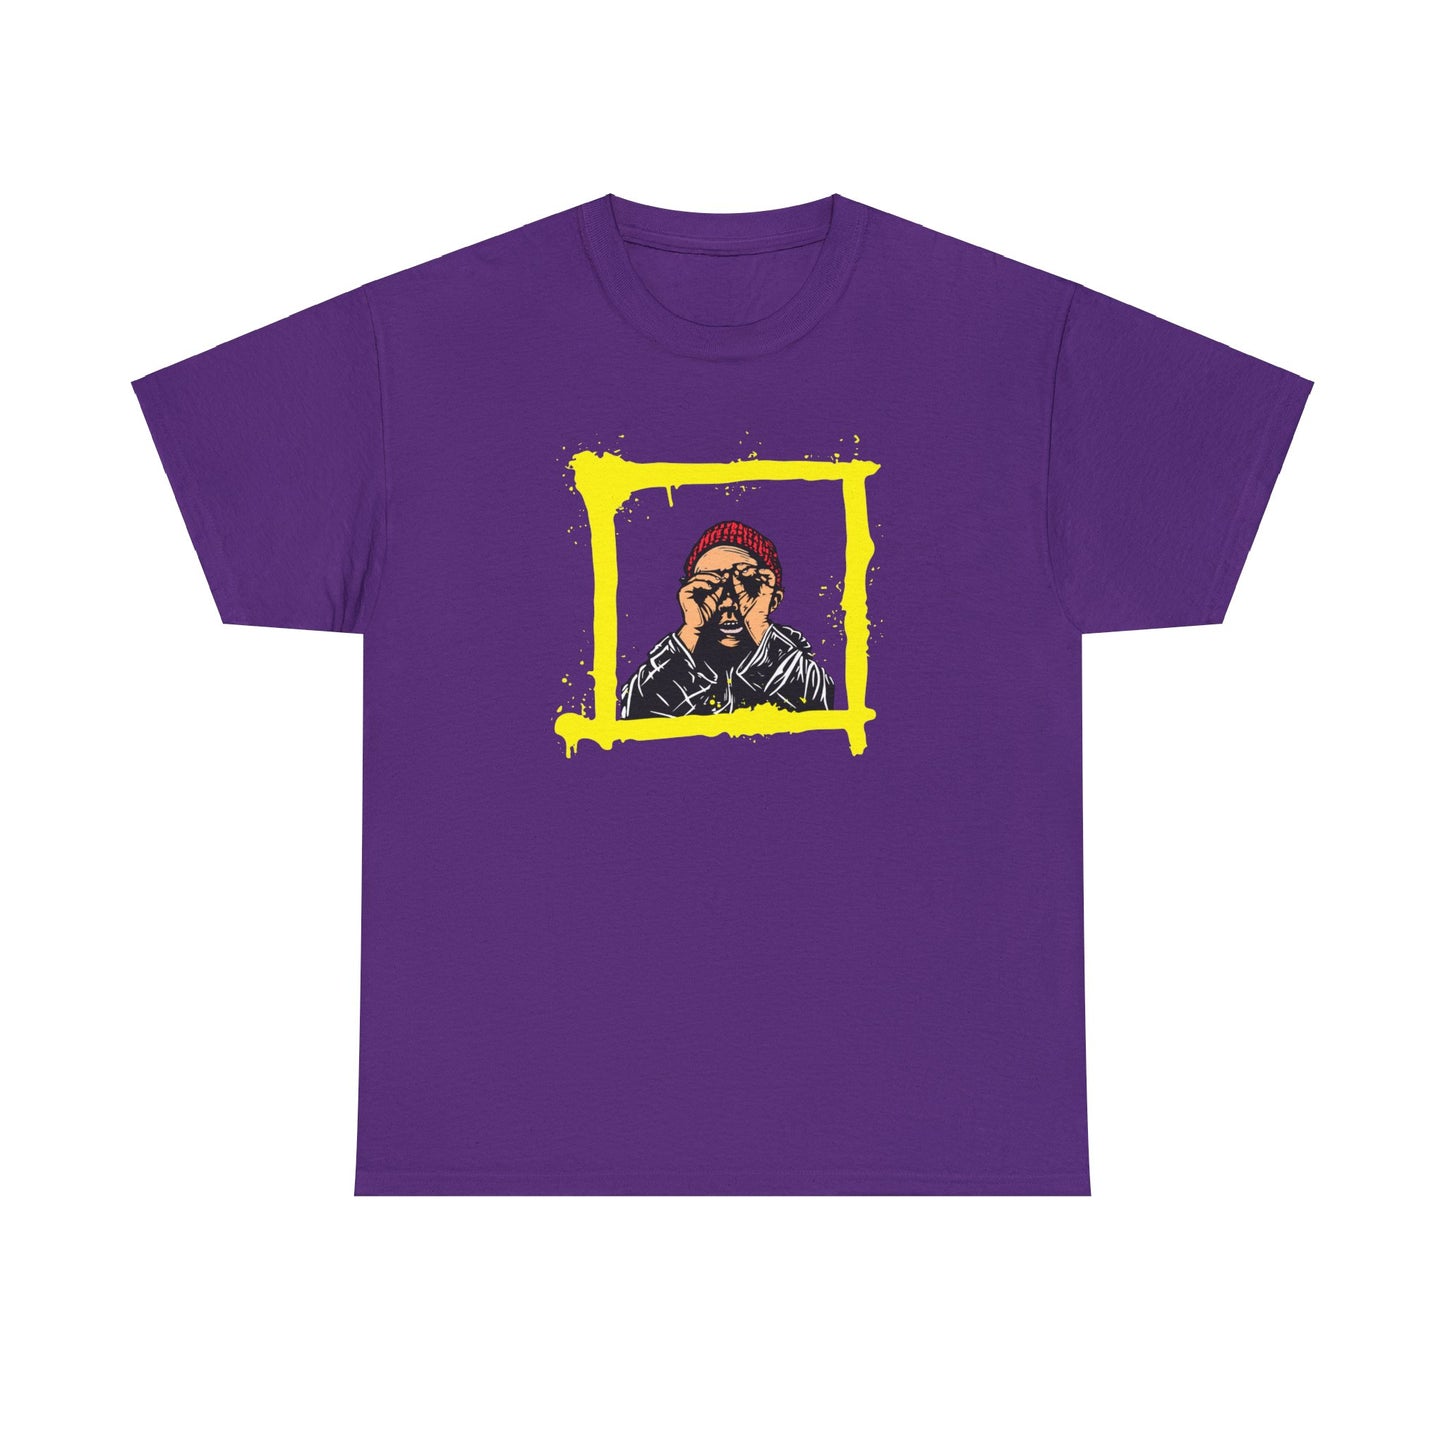 Peep Through Purple Unisex Heavy Cotton T-Shirt - Articalist.com